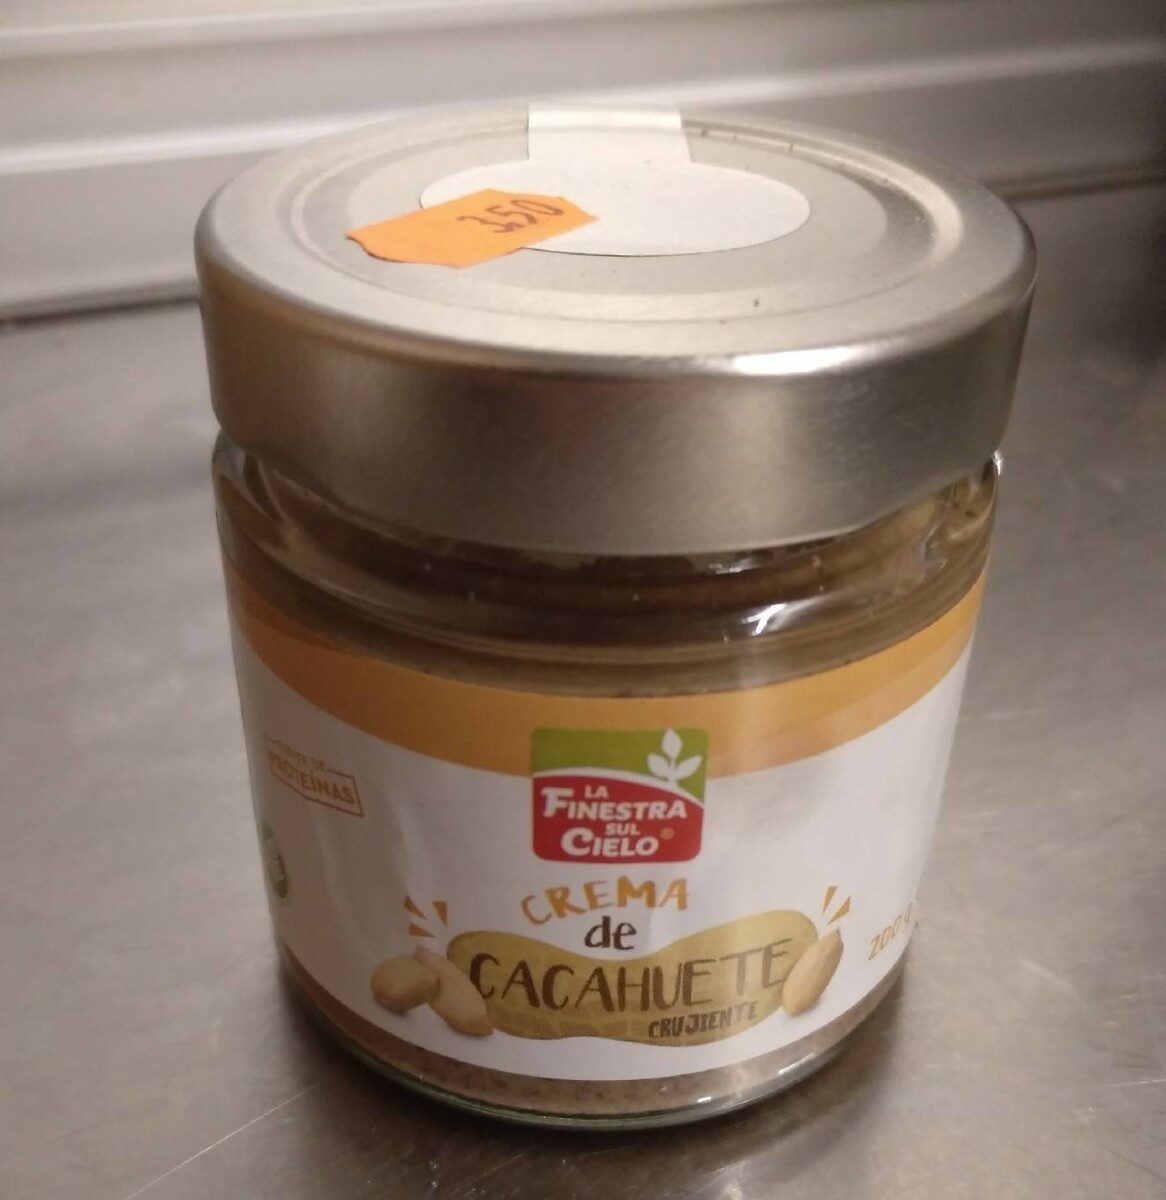 Crema de cacahuete crujiente - Product - es